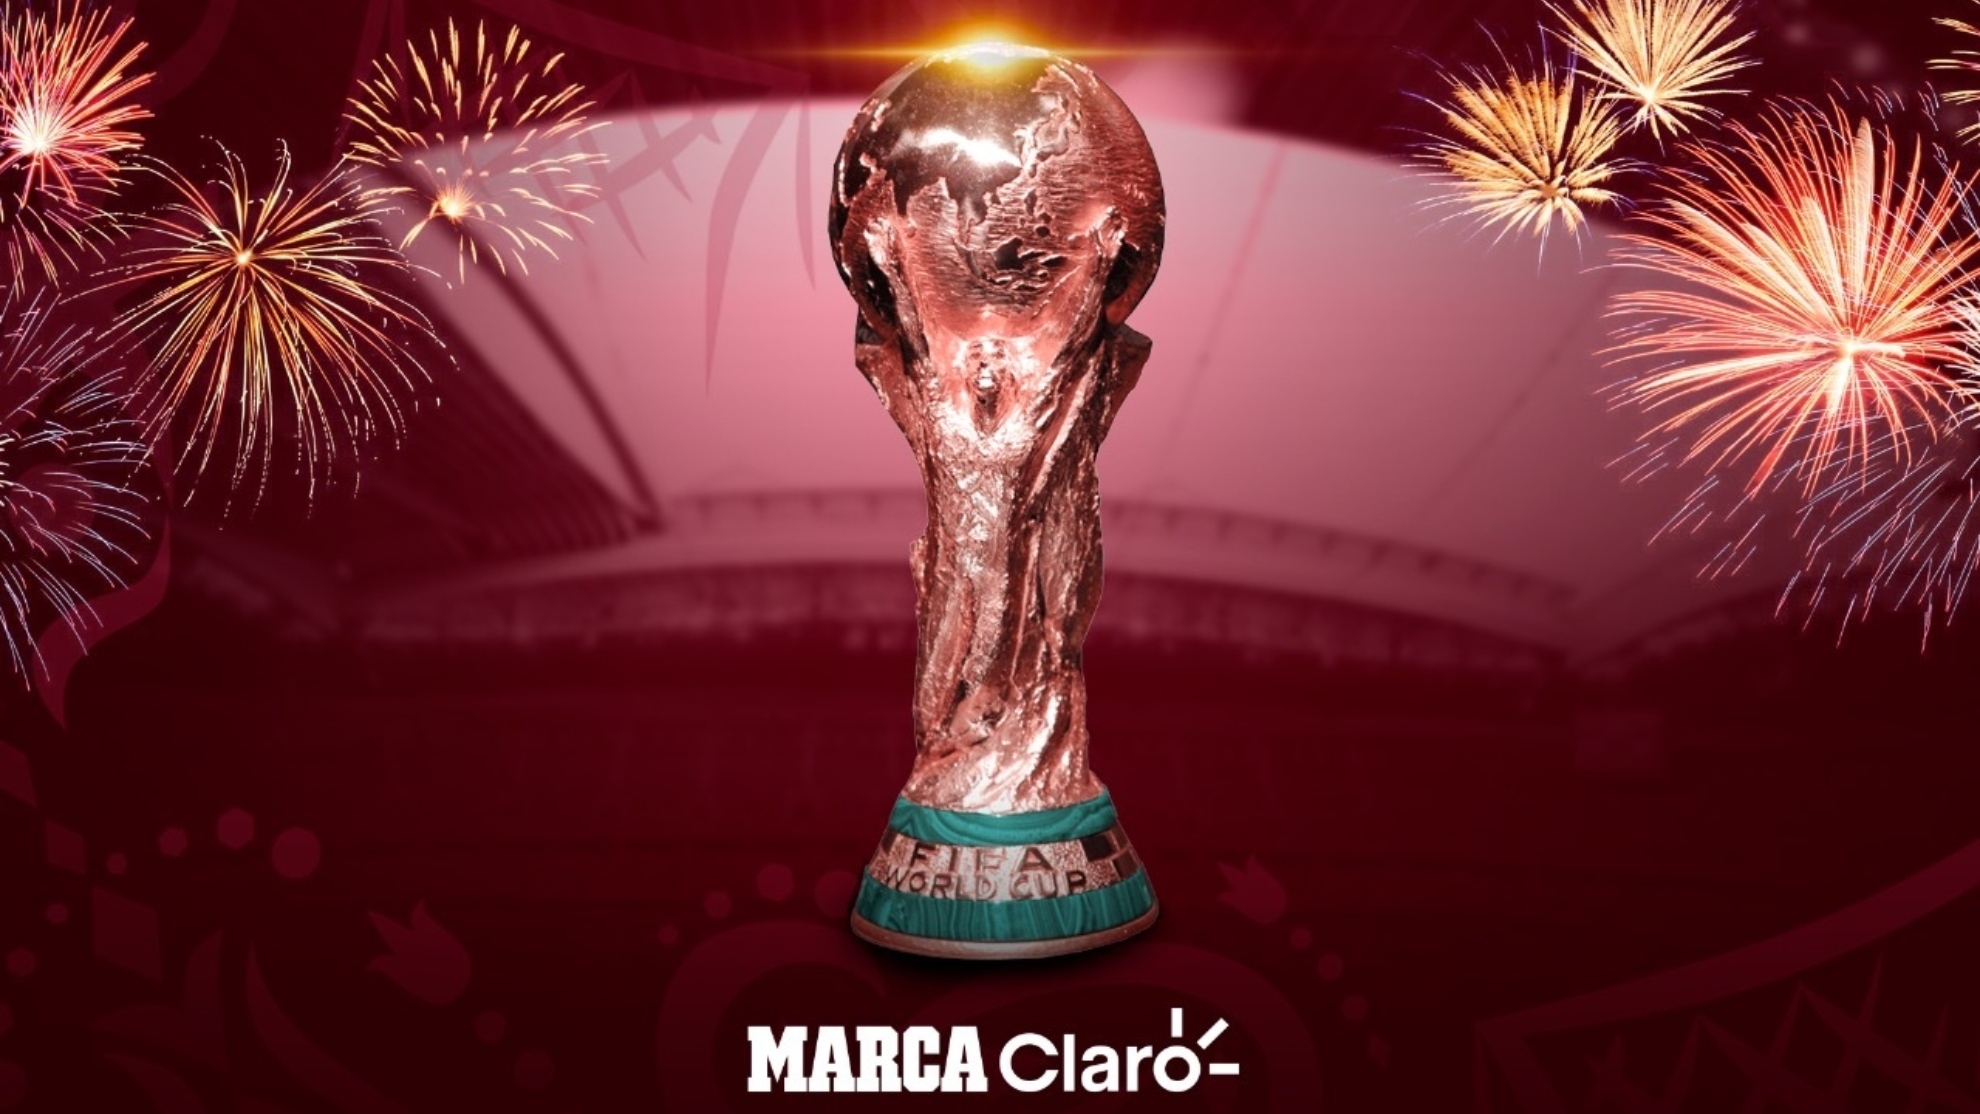 Mundial 2022 Qatar: Tabla de posiciones Qatar 2022 en horarios y resultados de la fase de grupos en directo, hoy 26 de noviembre | MARCA Claro Colombia